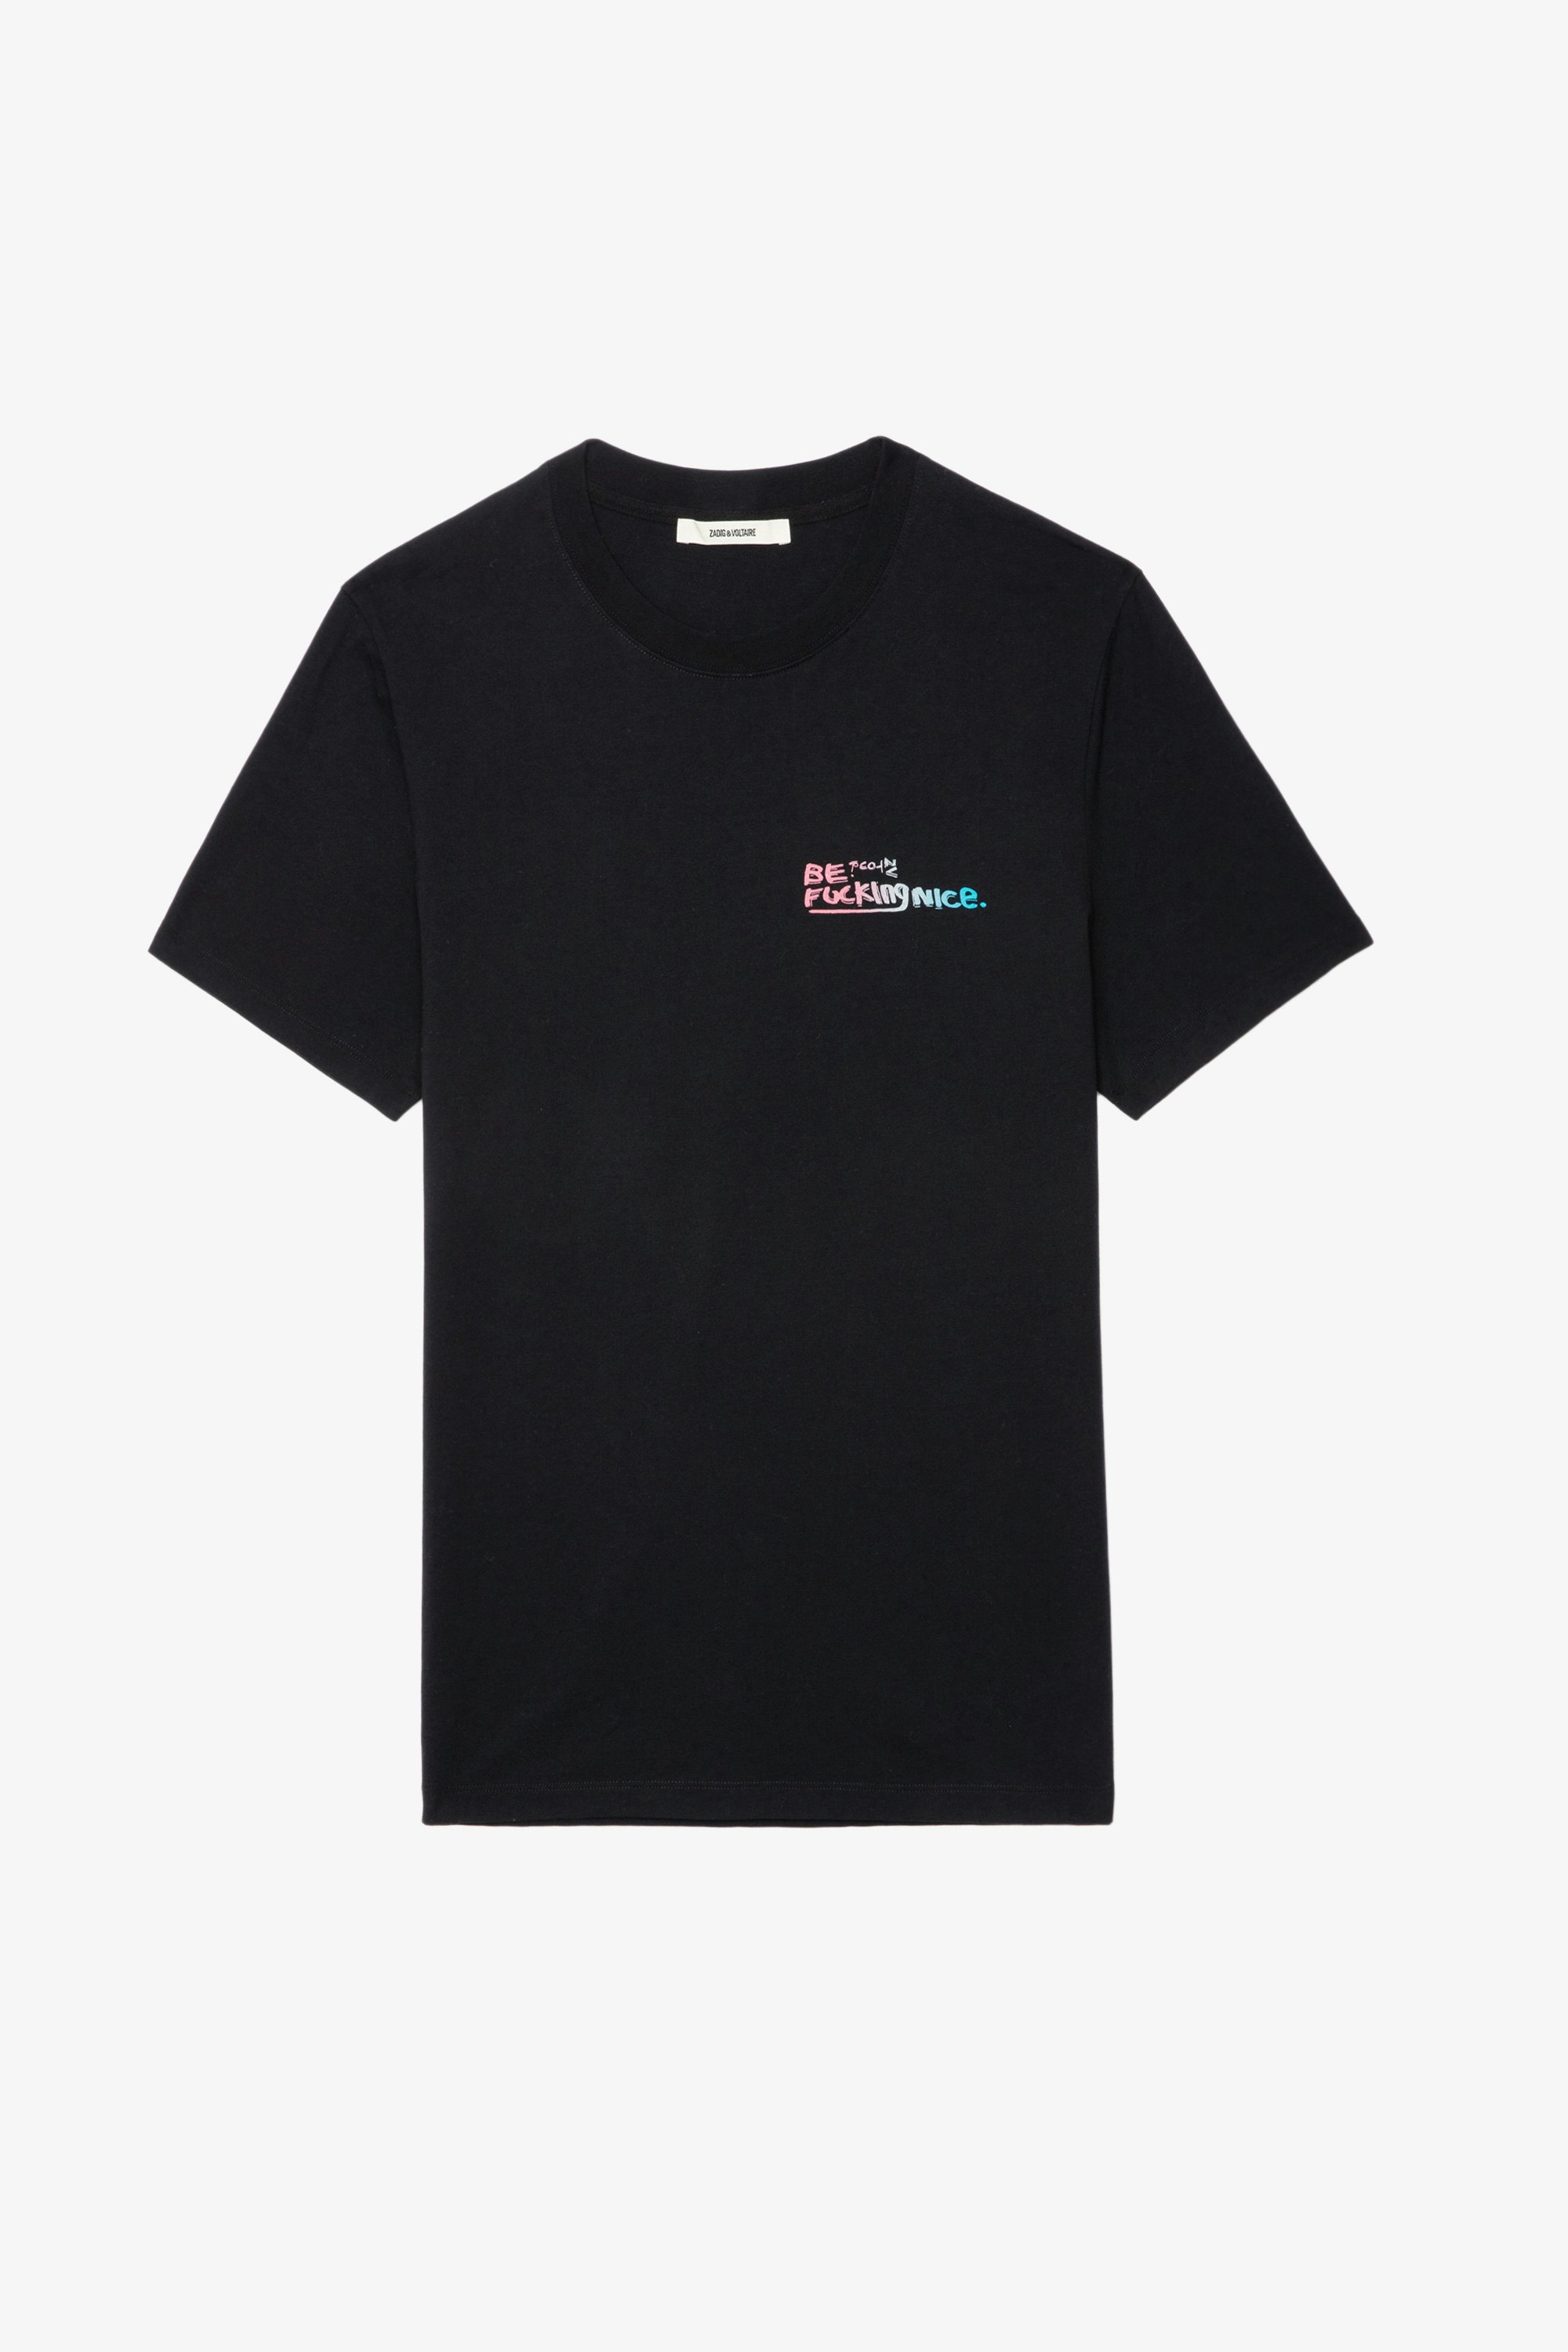 T-shirt Ted Photoprint - T-shirt in cotone nero con stampa fotografica Graffiti.